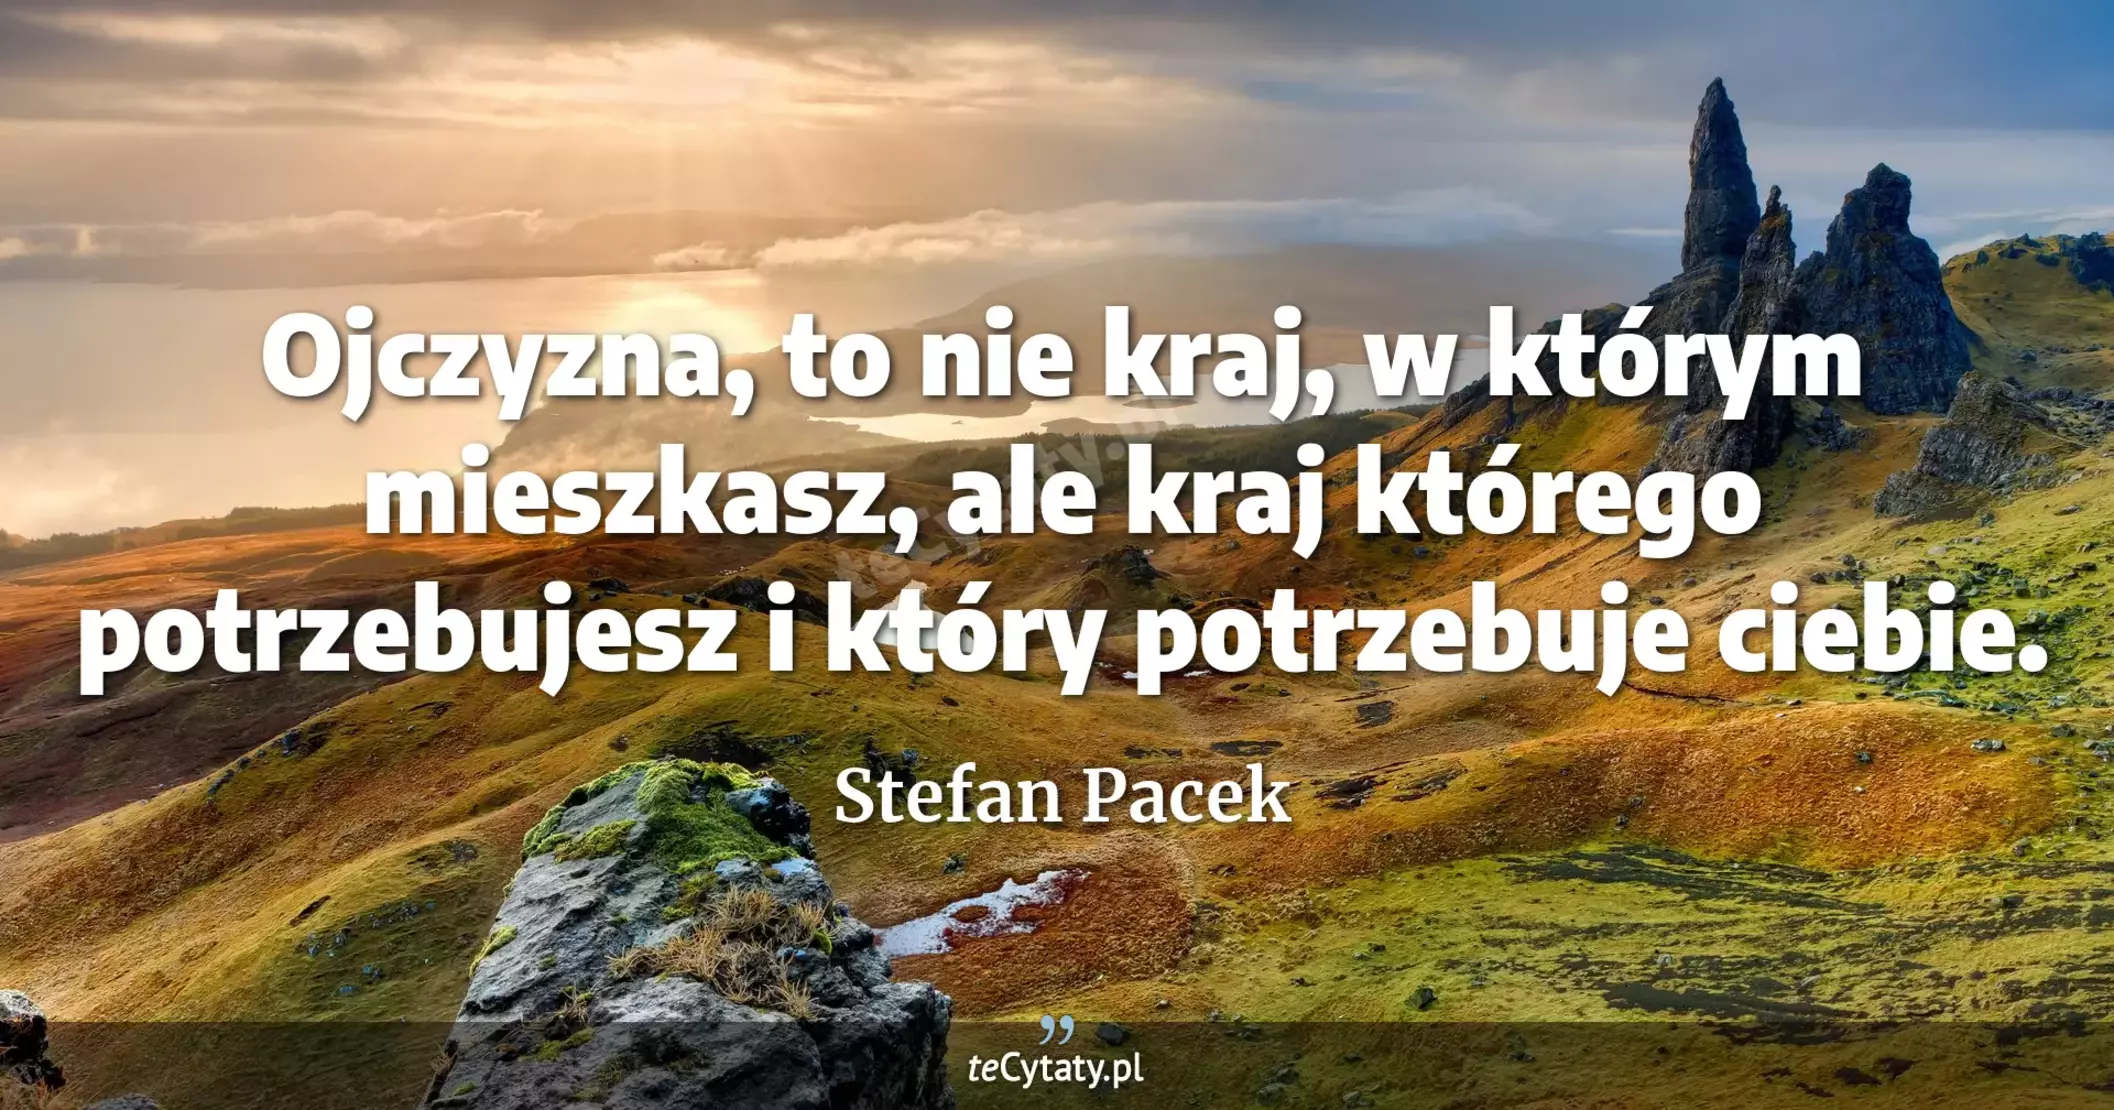 Ojczyzna, to nie kraj, w którym mieszkasz, ale kraj którego potrzebujesz i który potrzebuje ciebie. - Stefan Pacek